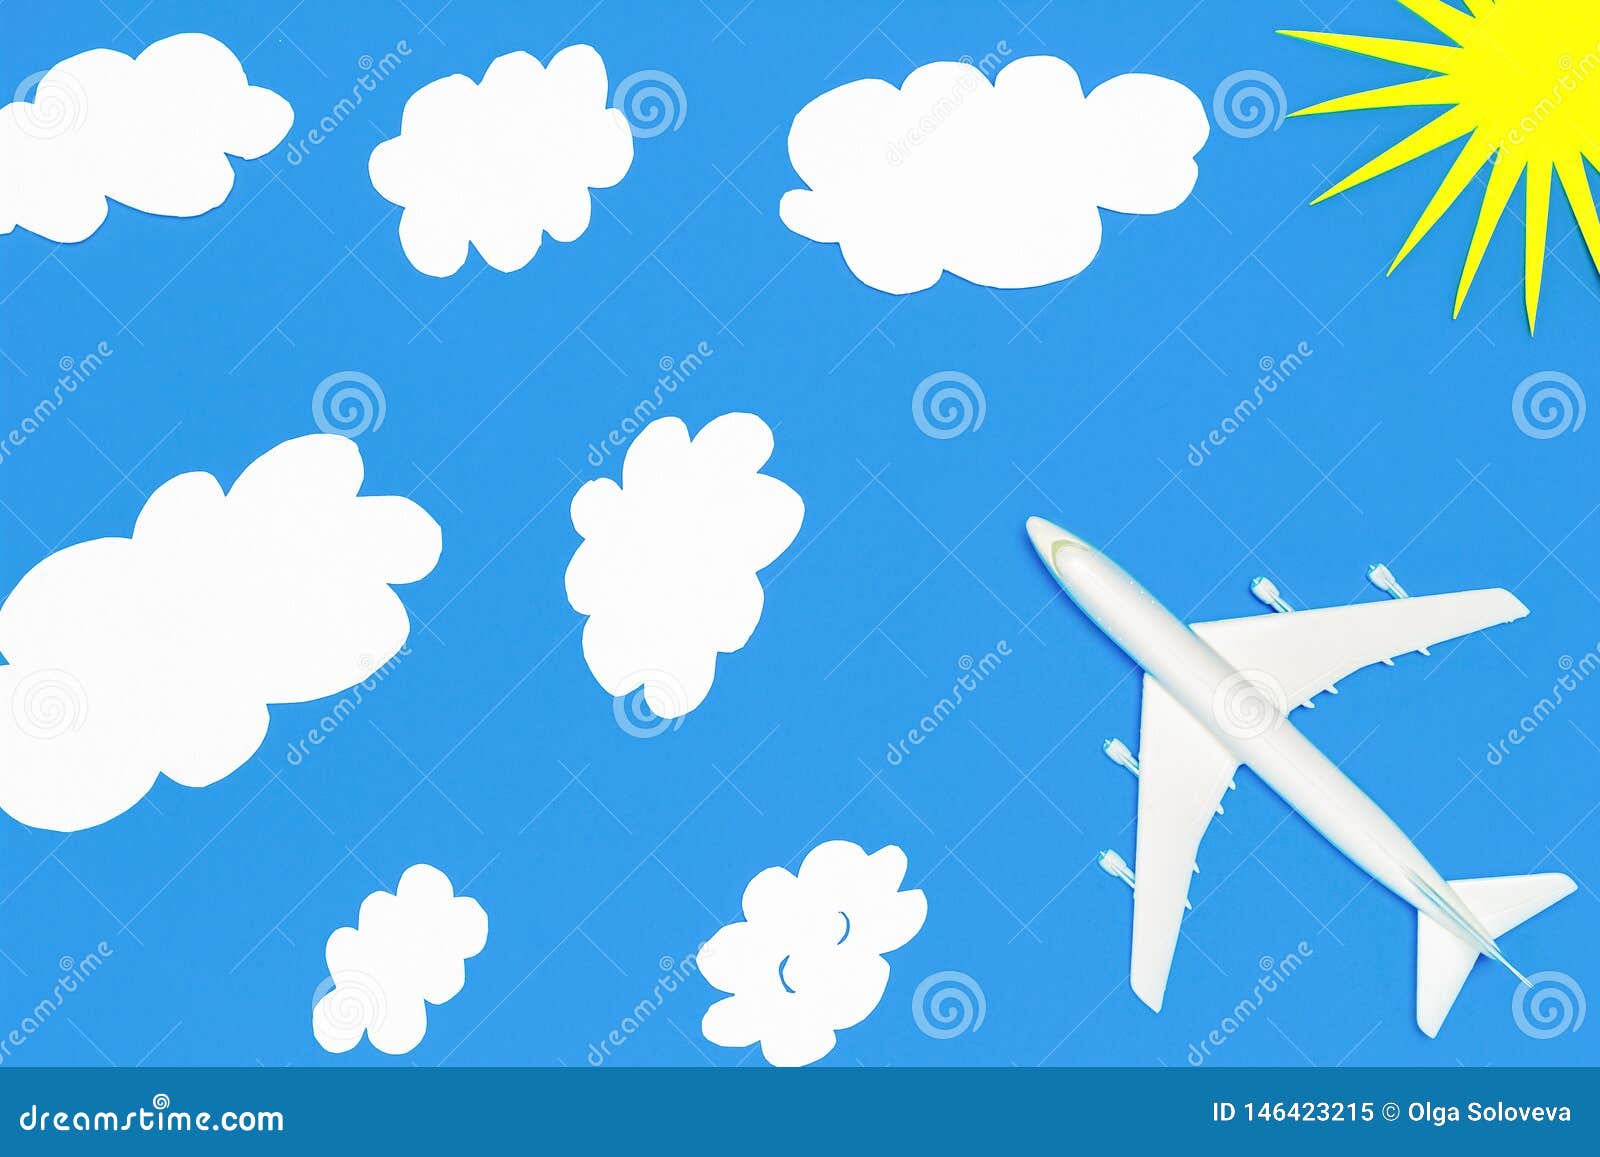 Рисование самолеты летят облаках средней группы. Самолеты летят сквозь облака рисование в средней группе. Рисование самолет средняя группа. Аппликация самолет в небе. Рисование самолет ср гр.